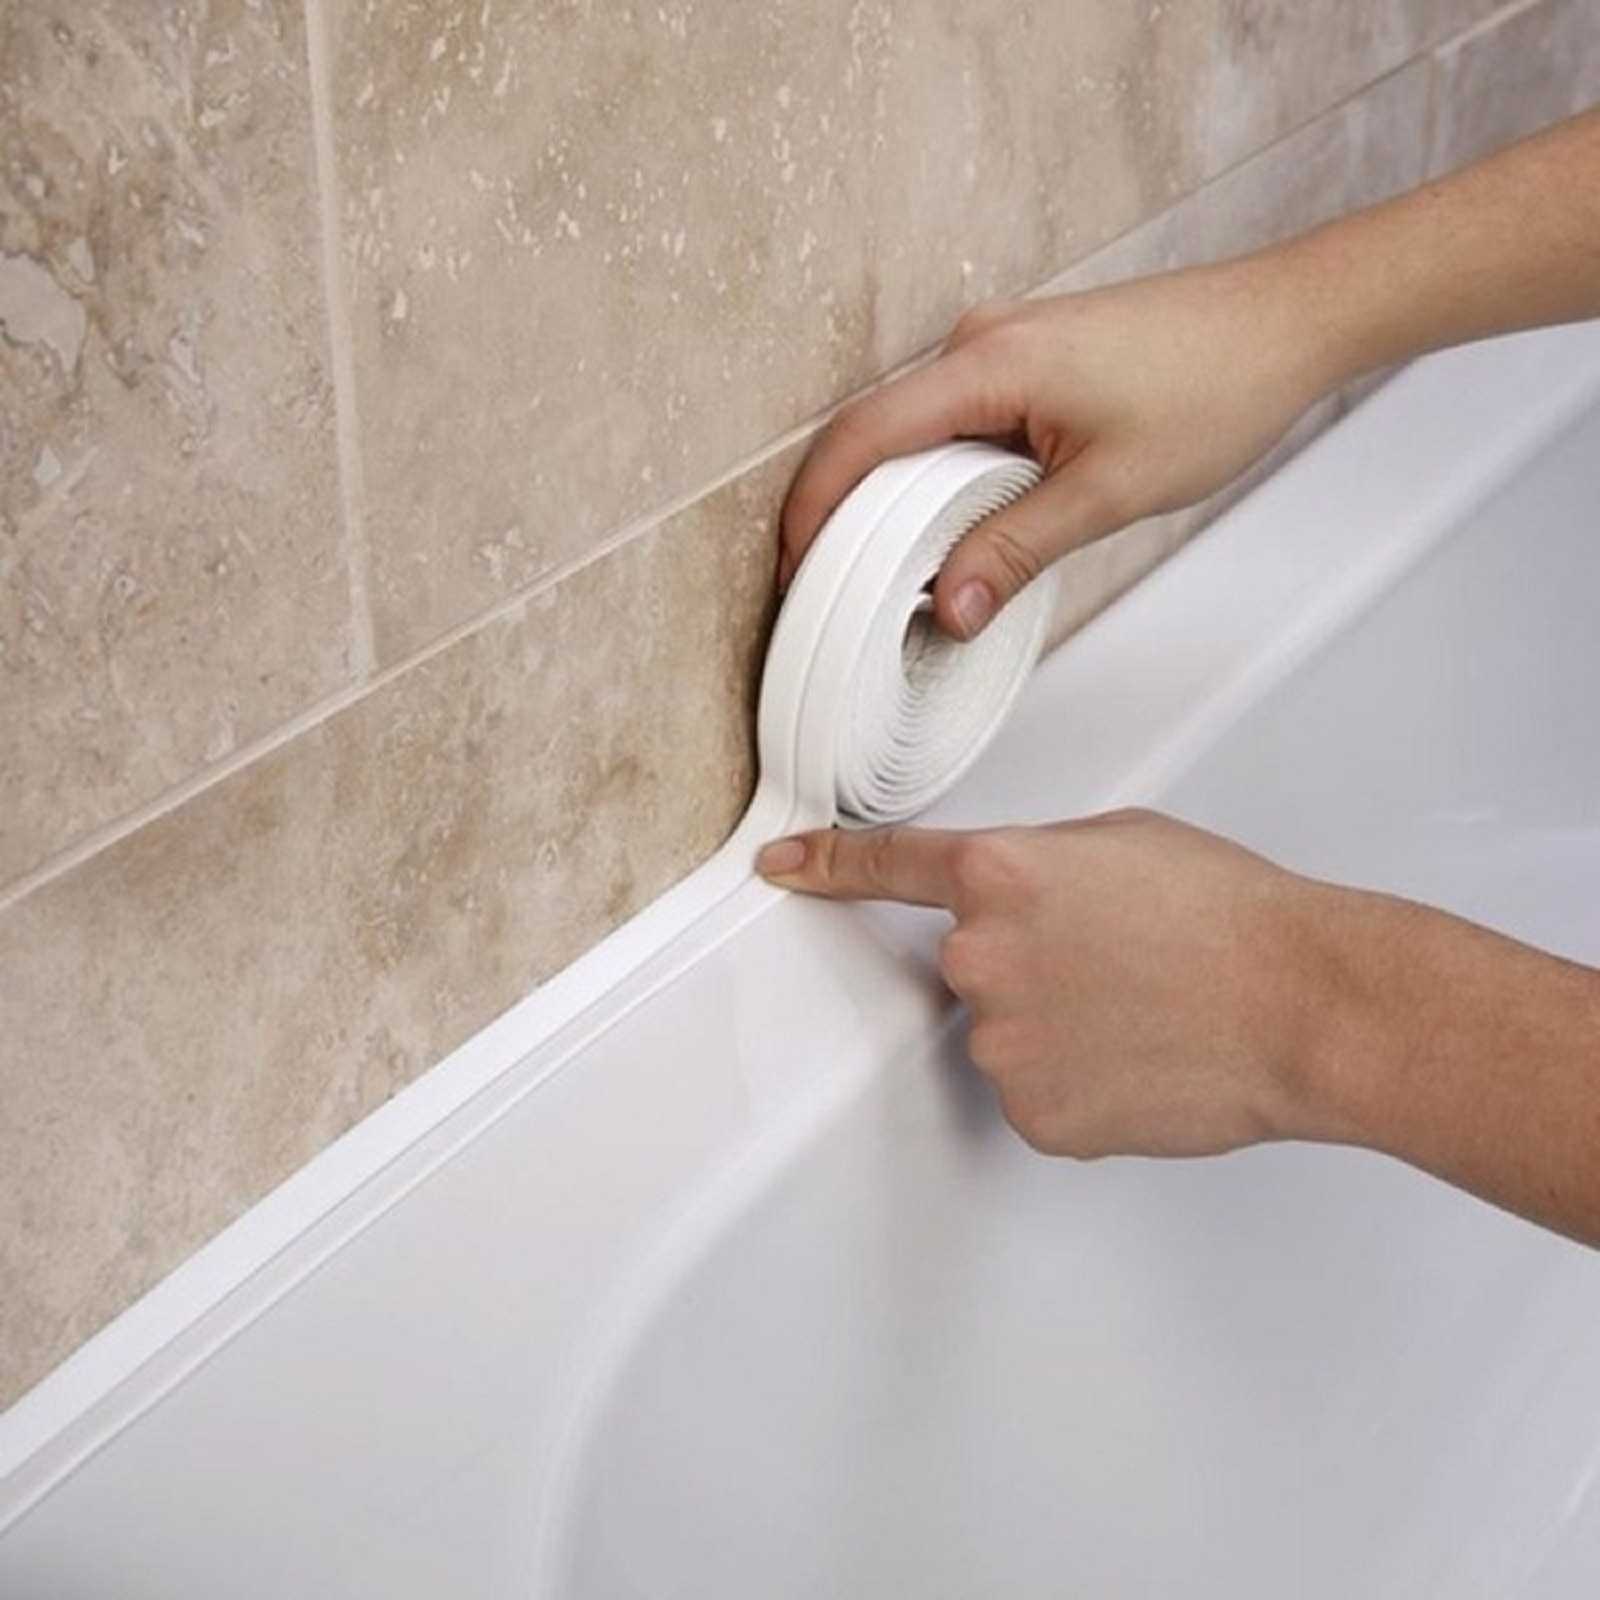 Как и чем можно заделать щель между ванной и стеной, варианты закрытия стыка